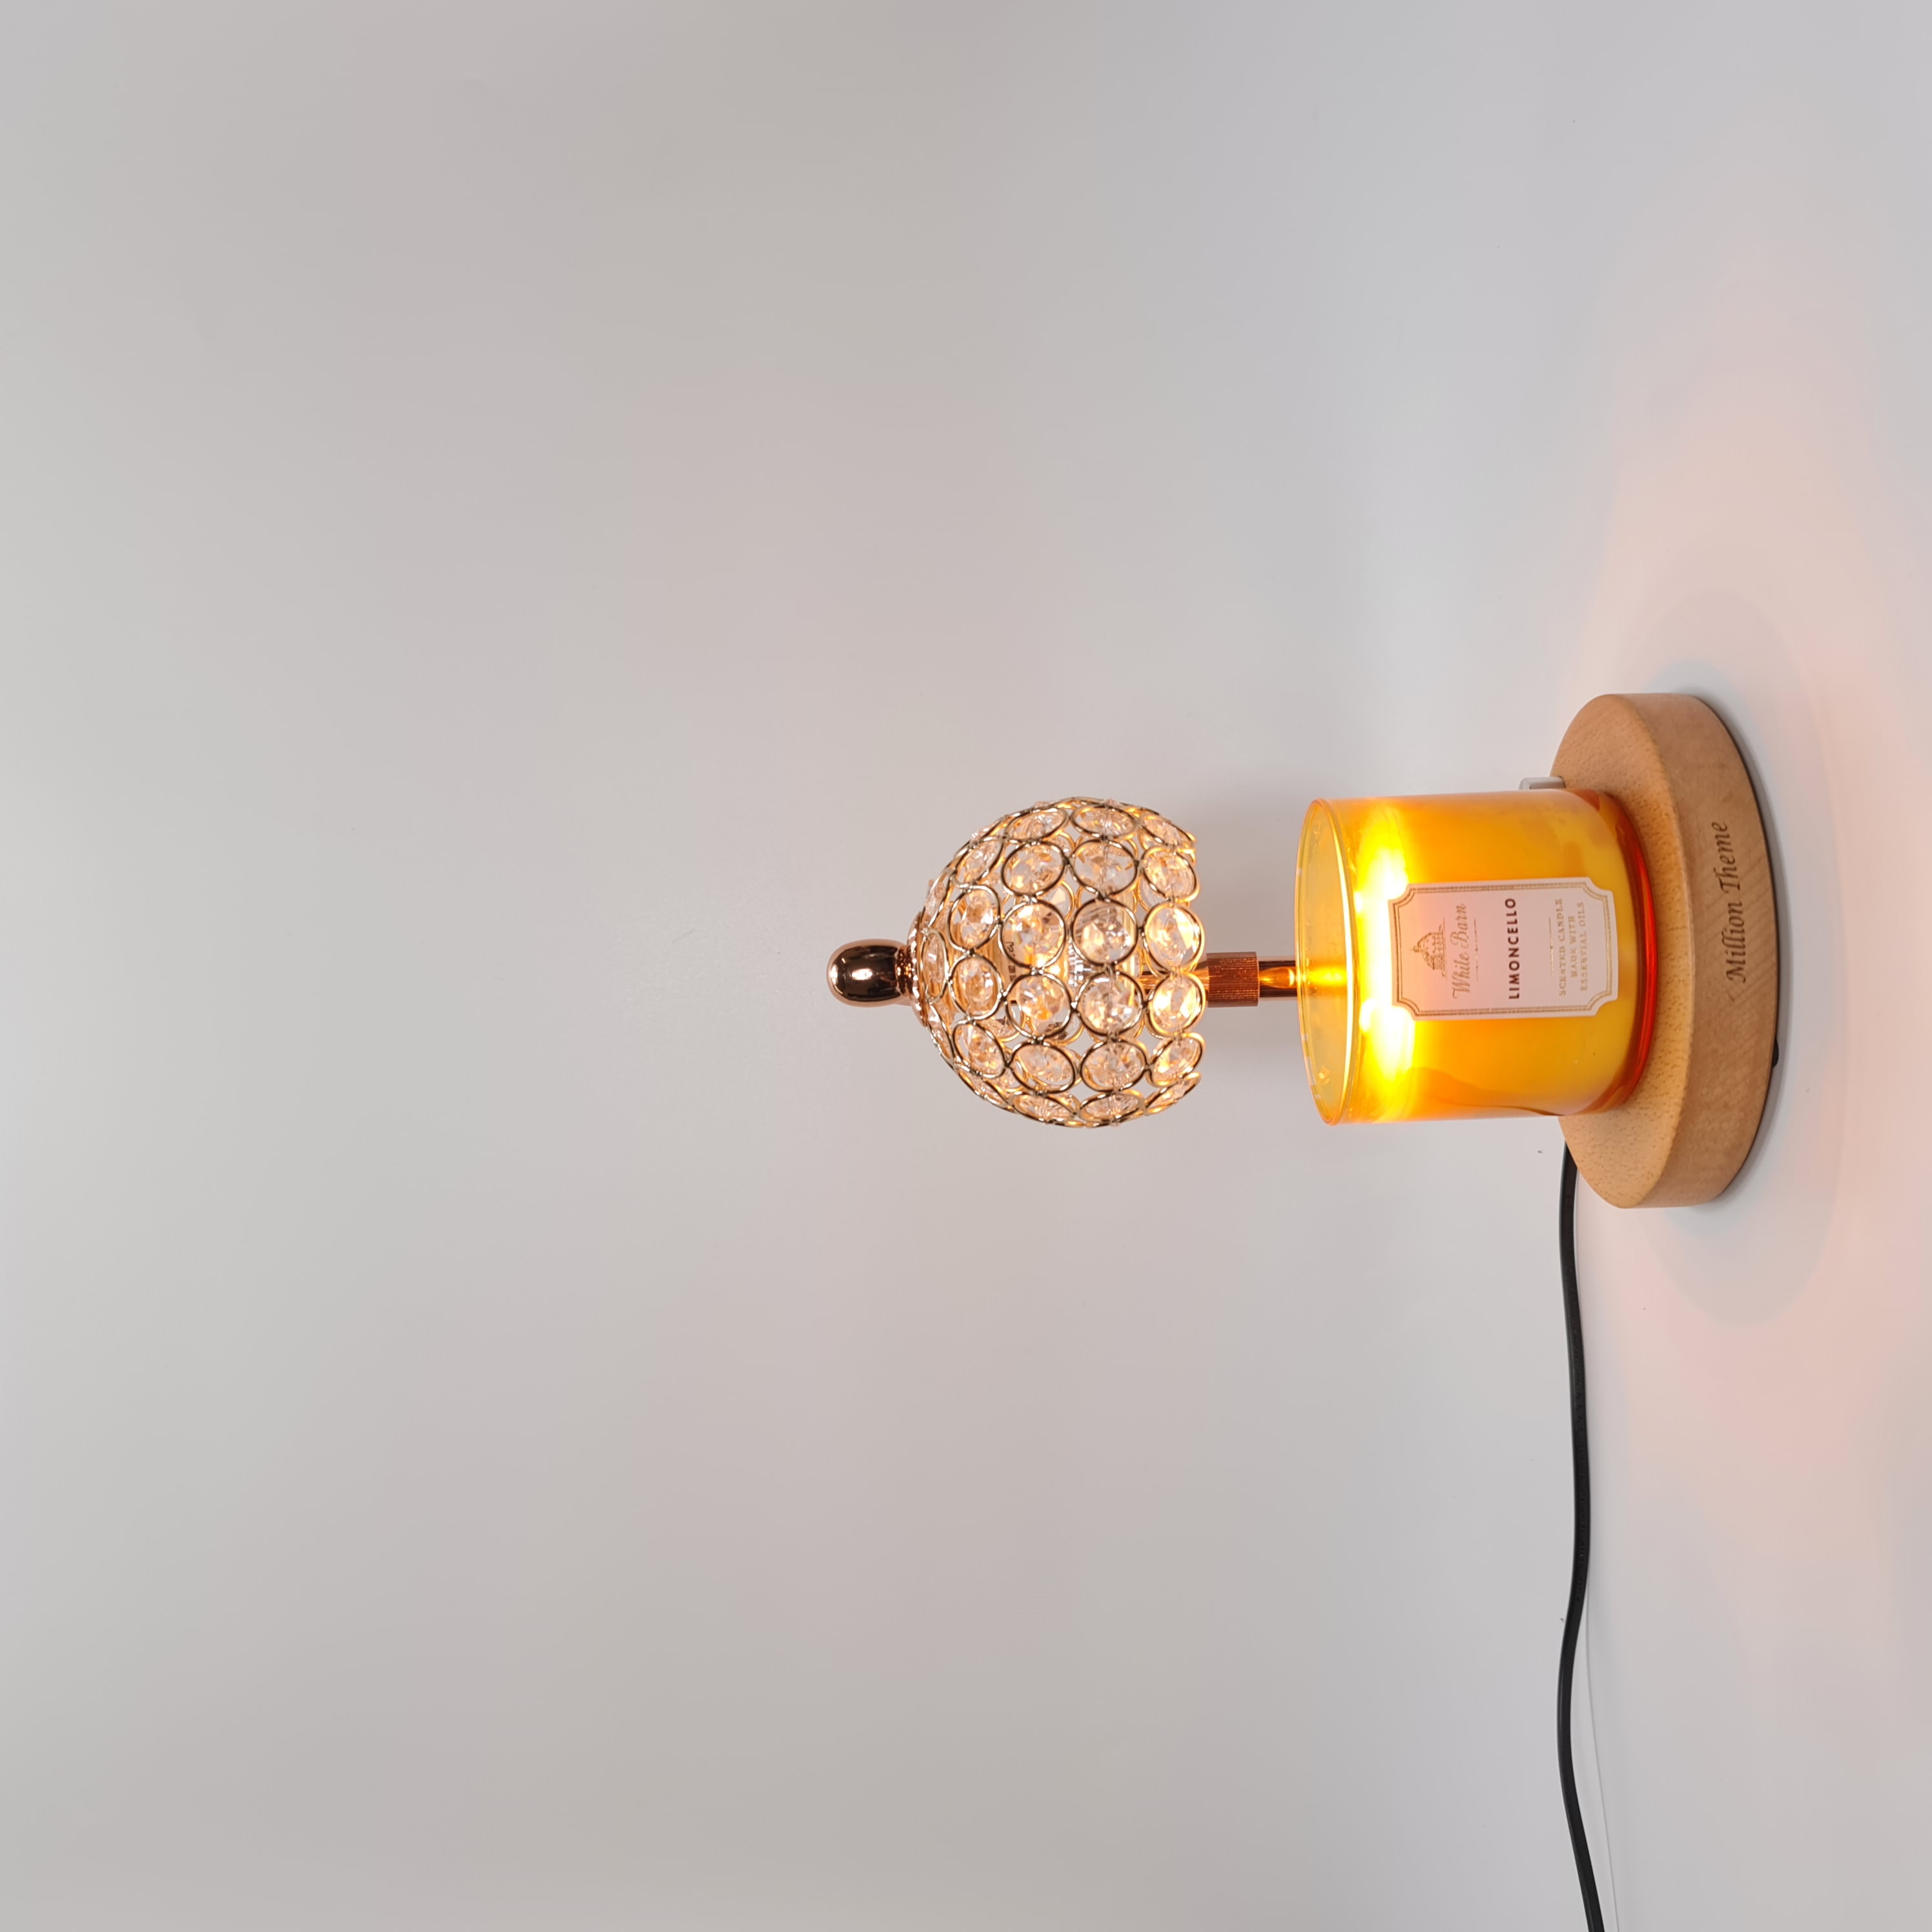 Đèn đốt nến thơm - Warmer Candles GU10 35W - điều chỉnh được chiều cao độ sáng, đèn vàng đế tròn vàng